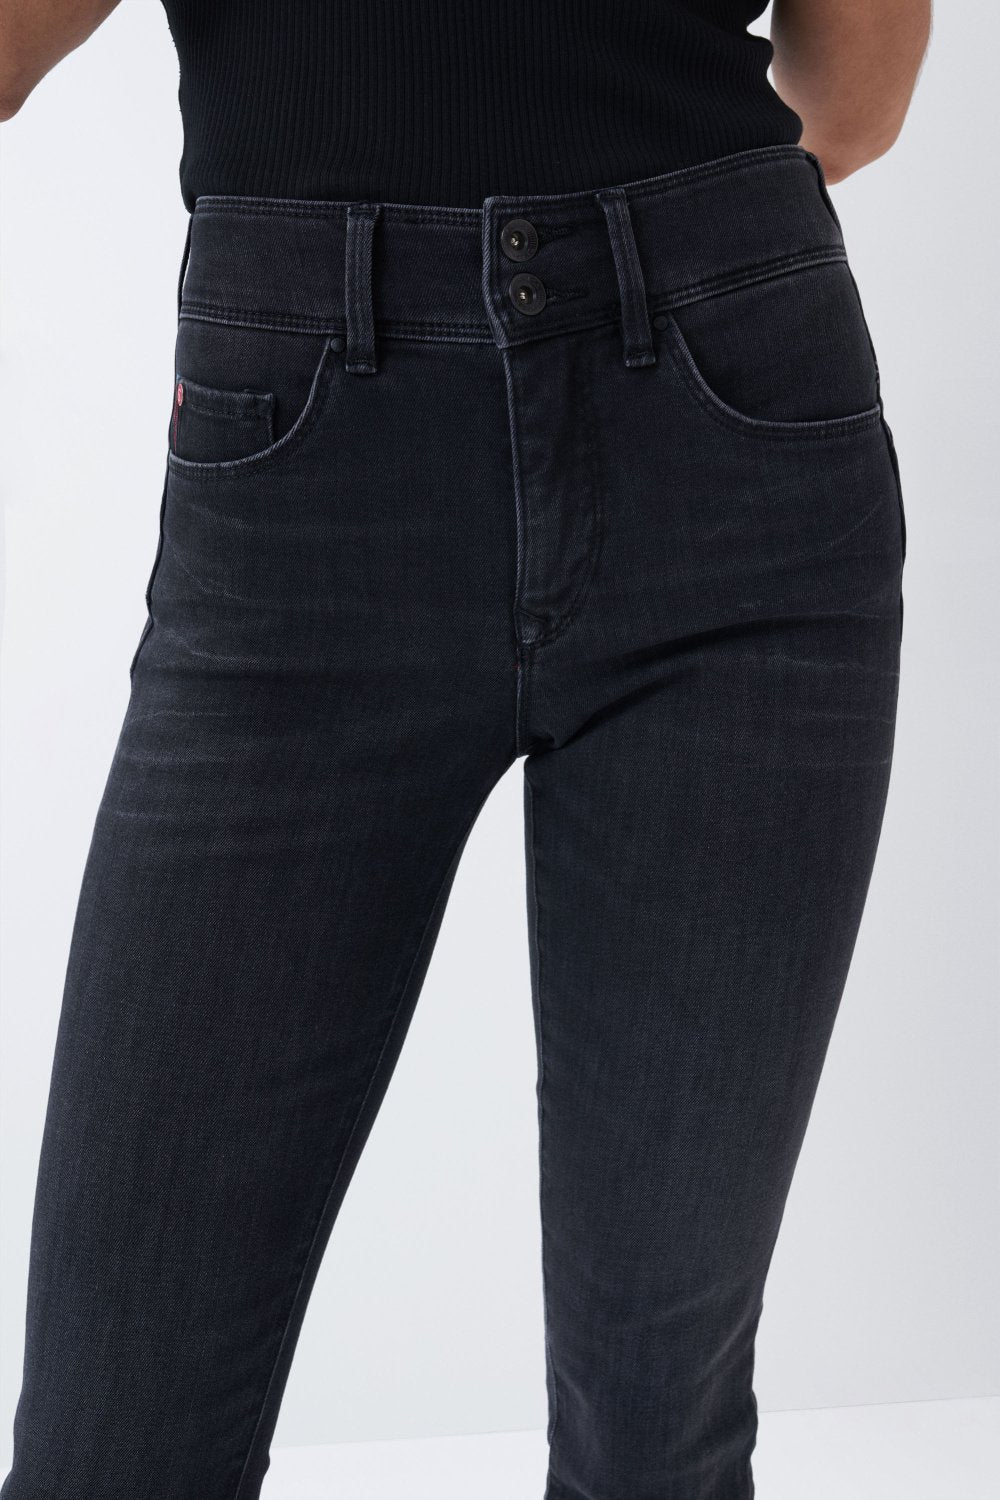 Secret Skinny Push-In in Black Jeans Salsa Jeans   